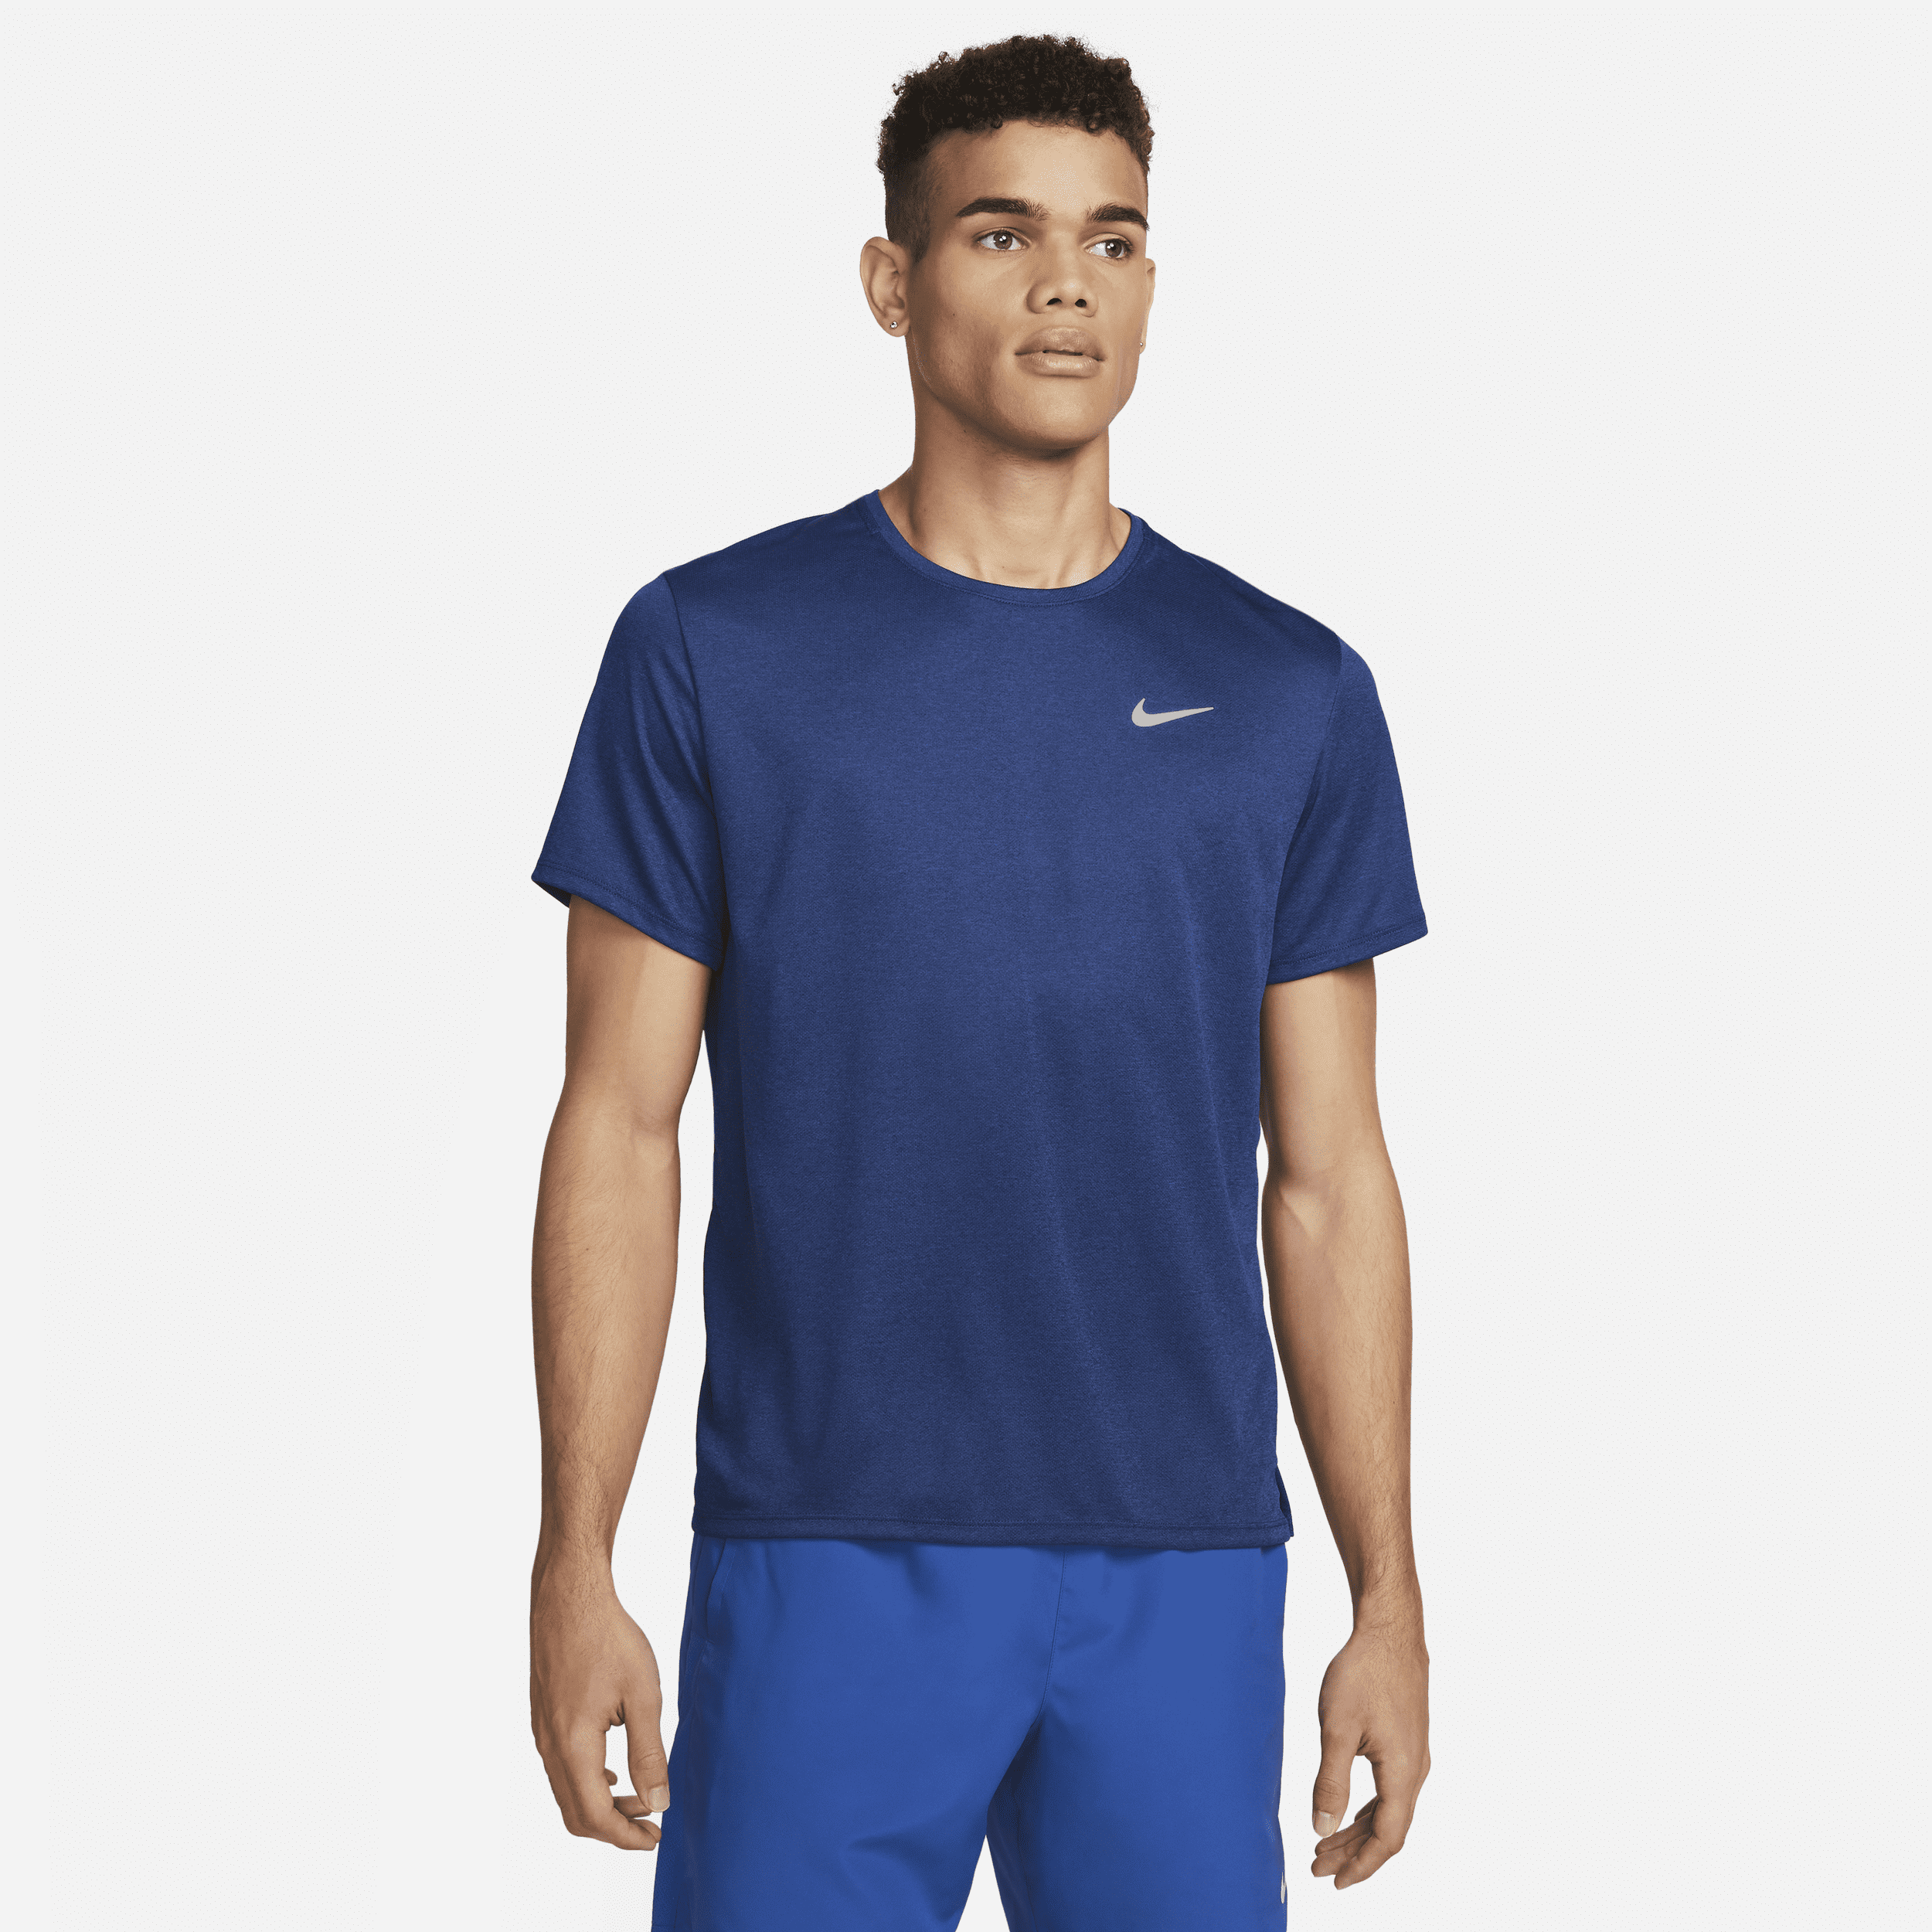 Maglia da running a manica corta Dri-FIT UV Nike Miler – Uomo - Blu